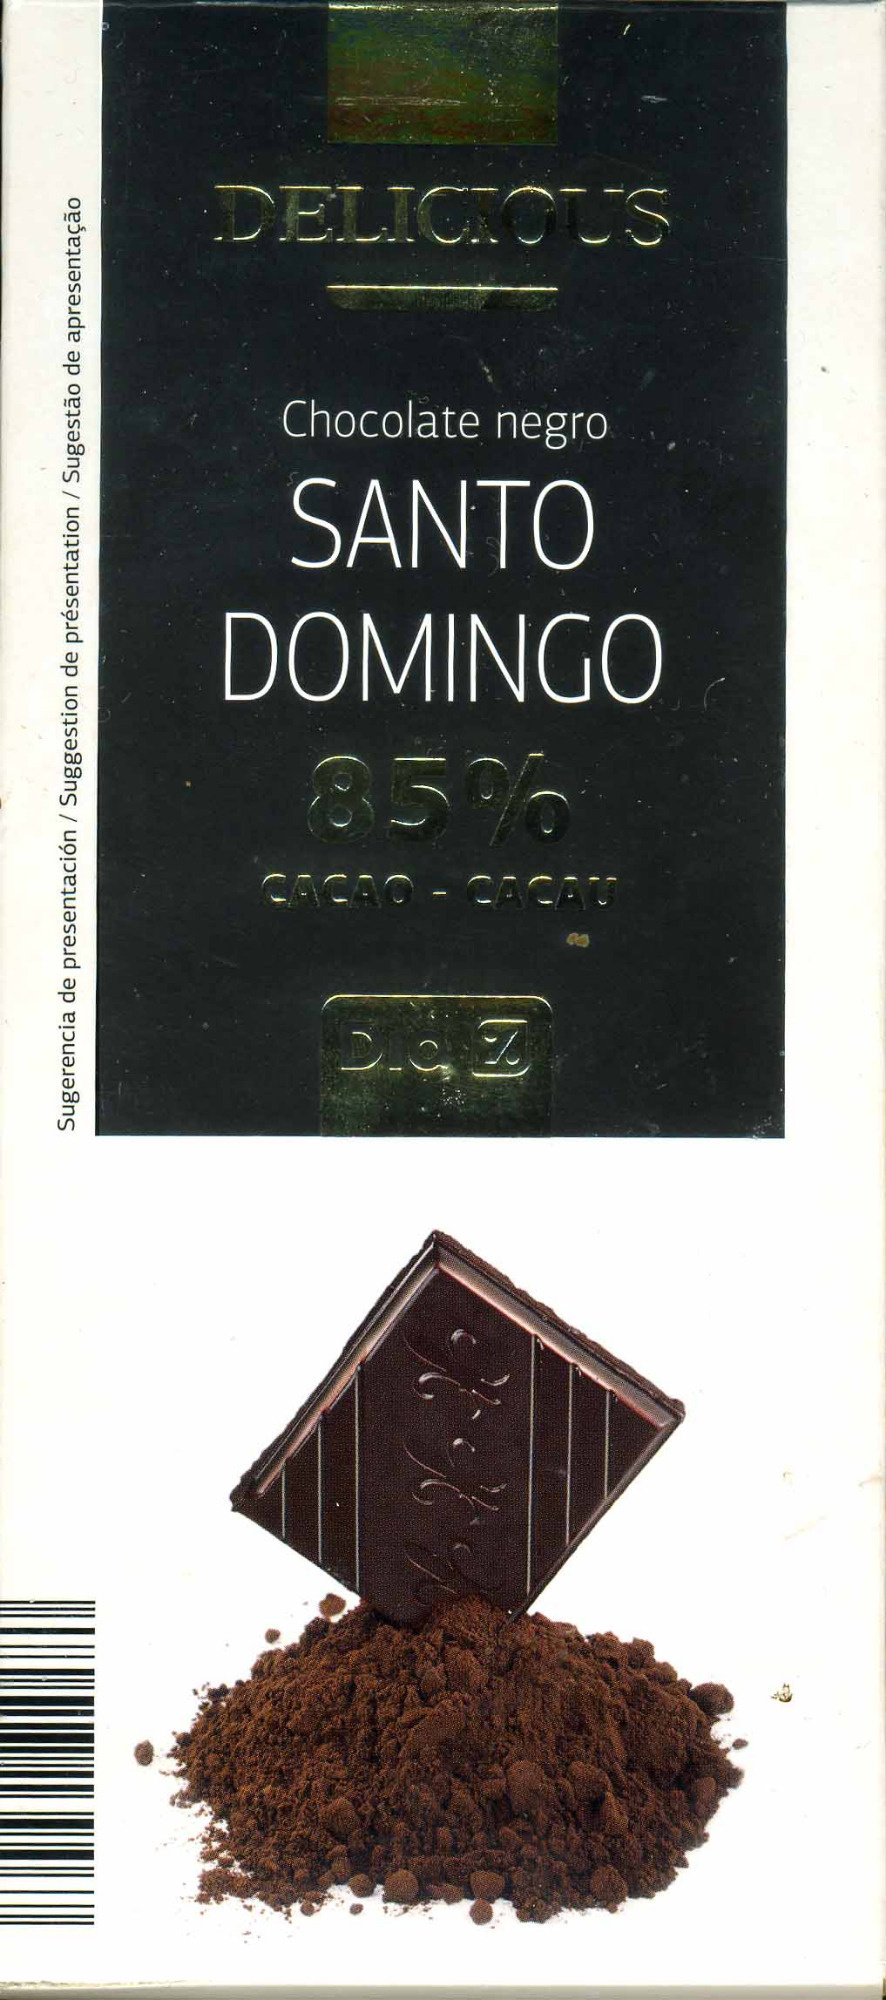 Tableta de chocolate negro 85% cacao Origen Santo Domingo - Product - es